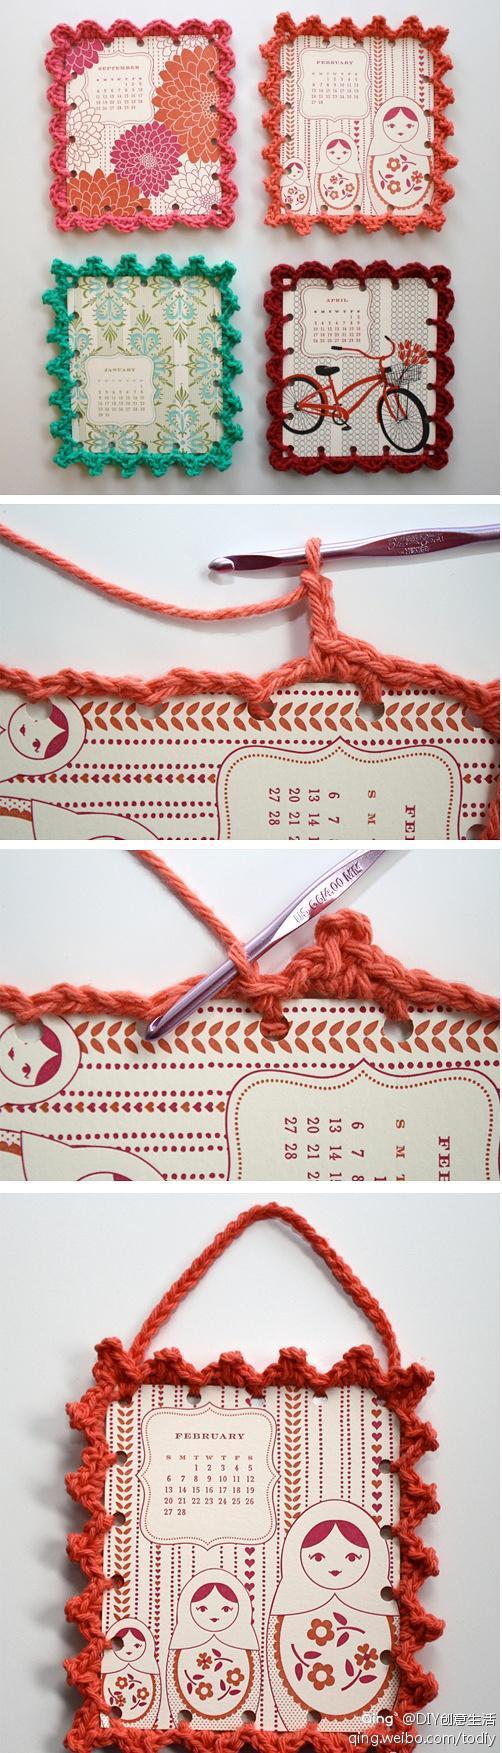 简单的手工毛线编织的相框,创意很棒!